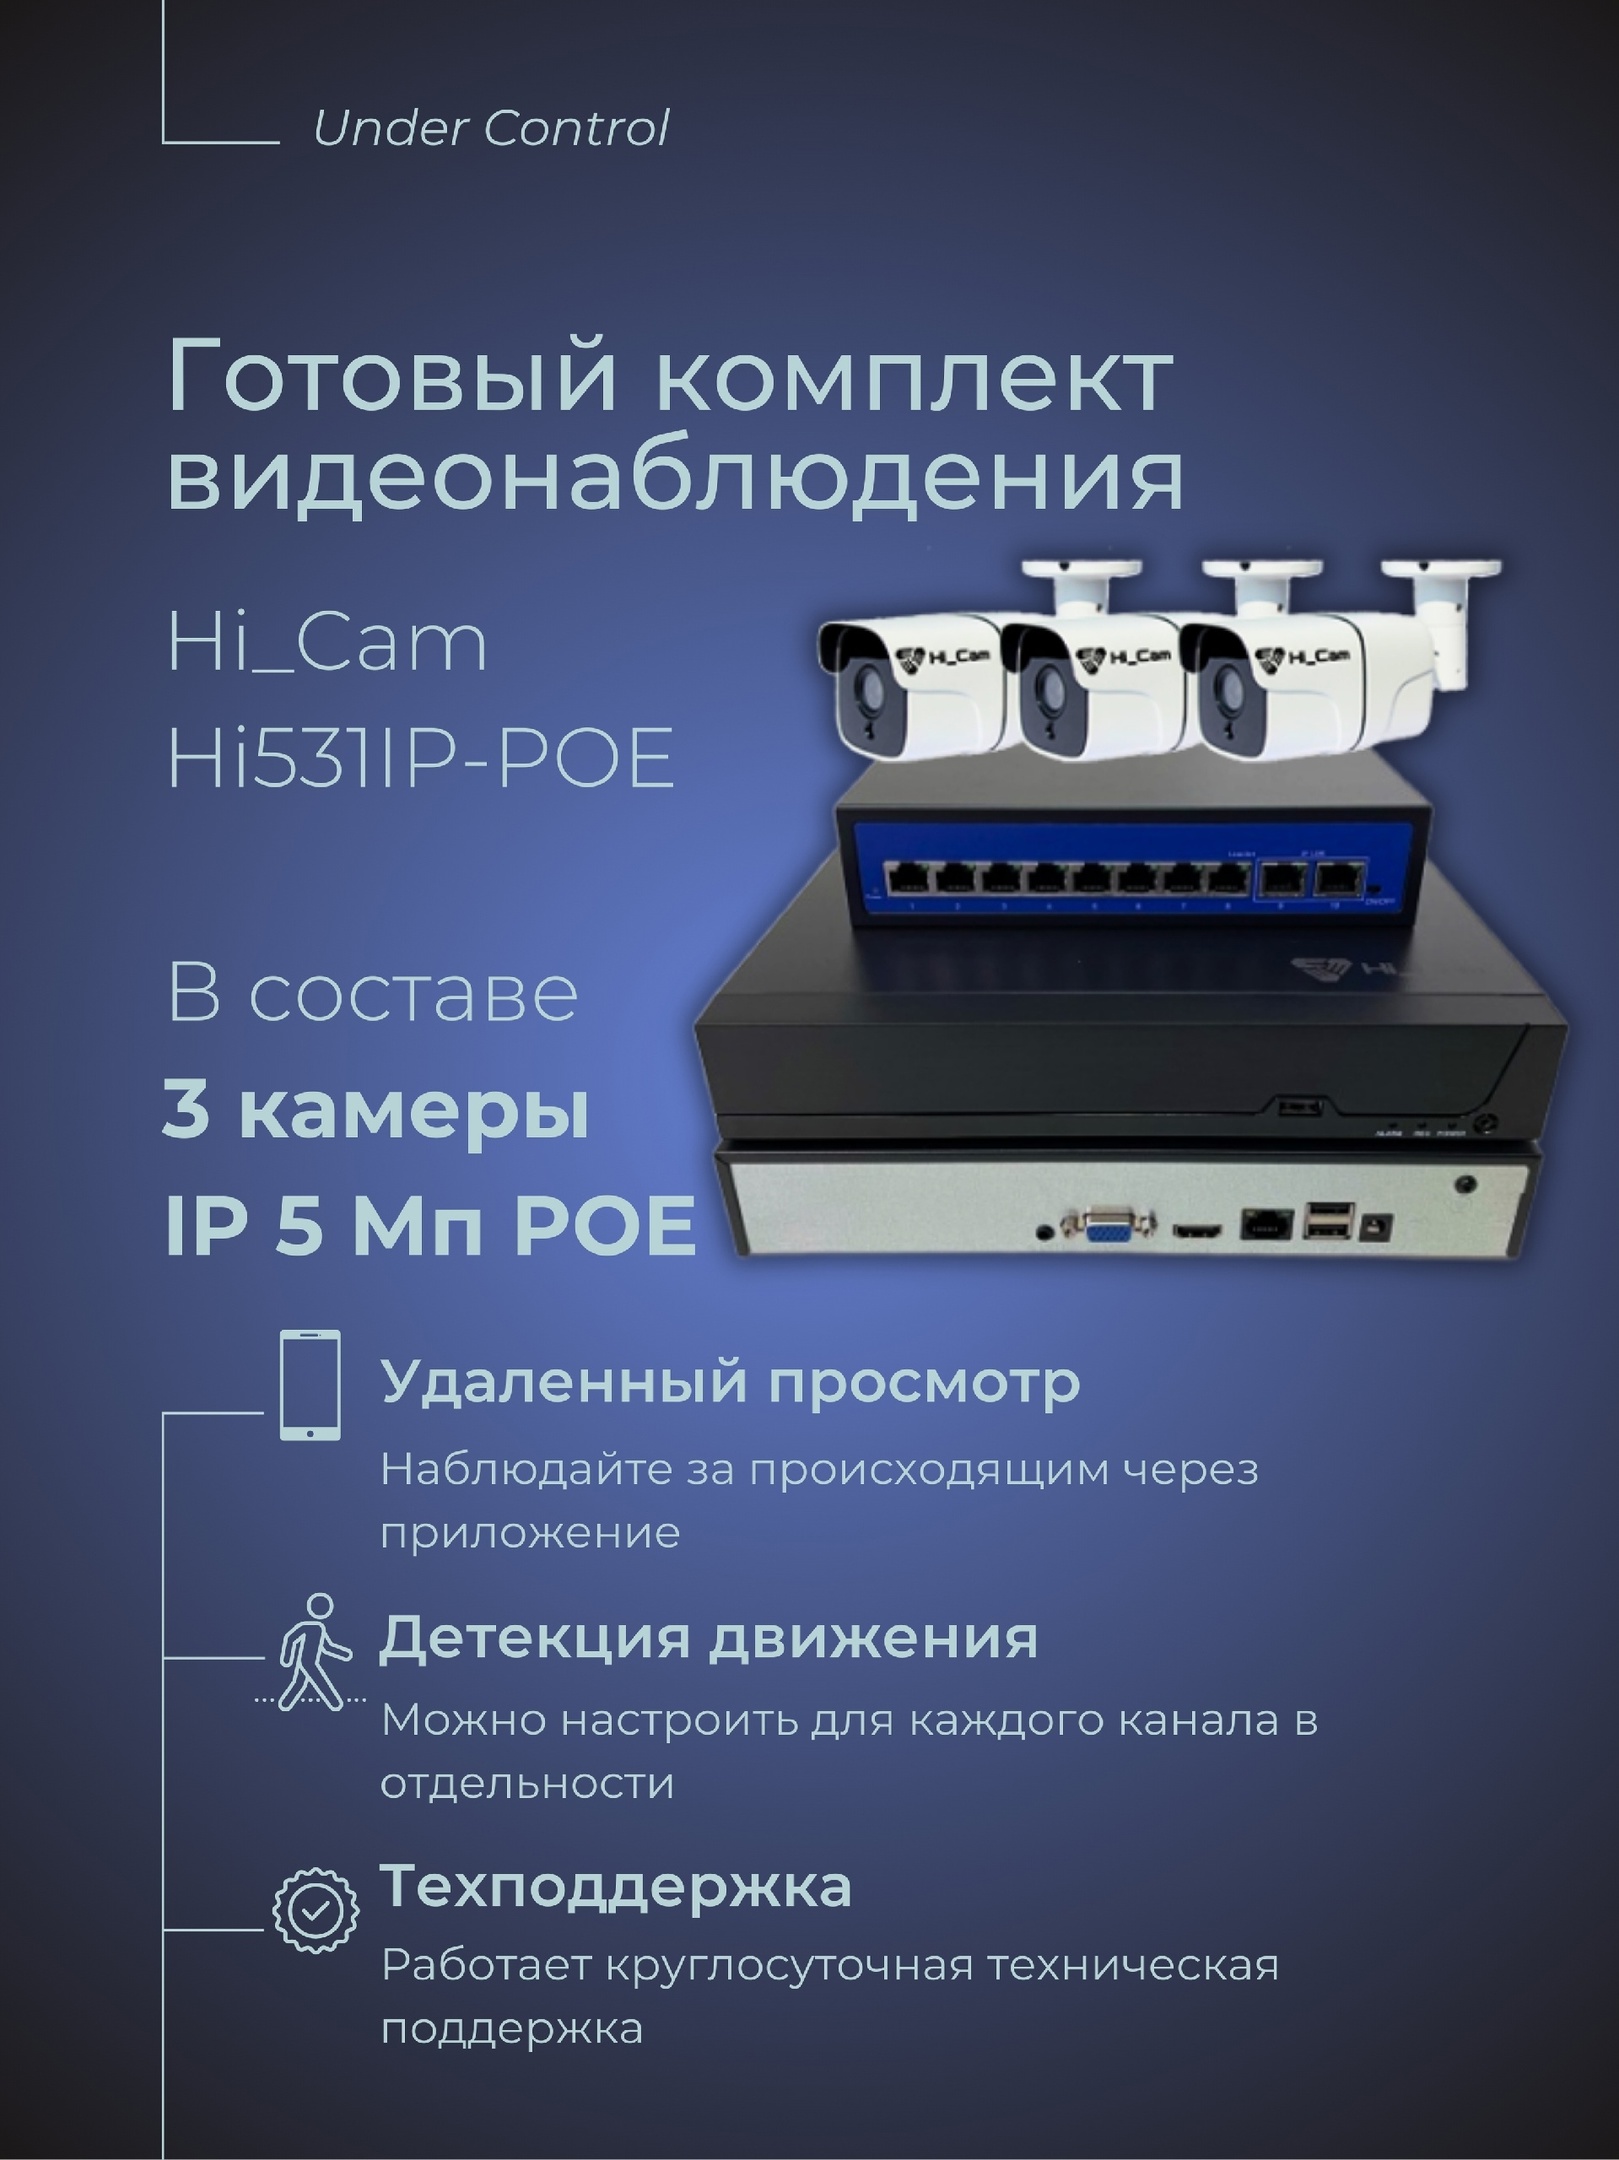 Комплект видеонаблюдения Hi_Cam Hi531ip-poe 5 мегапикселей